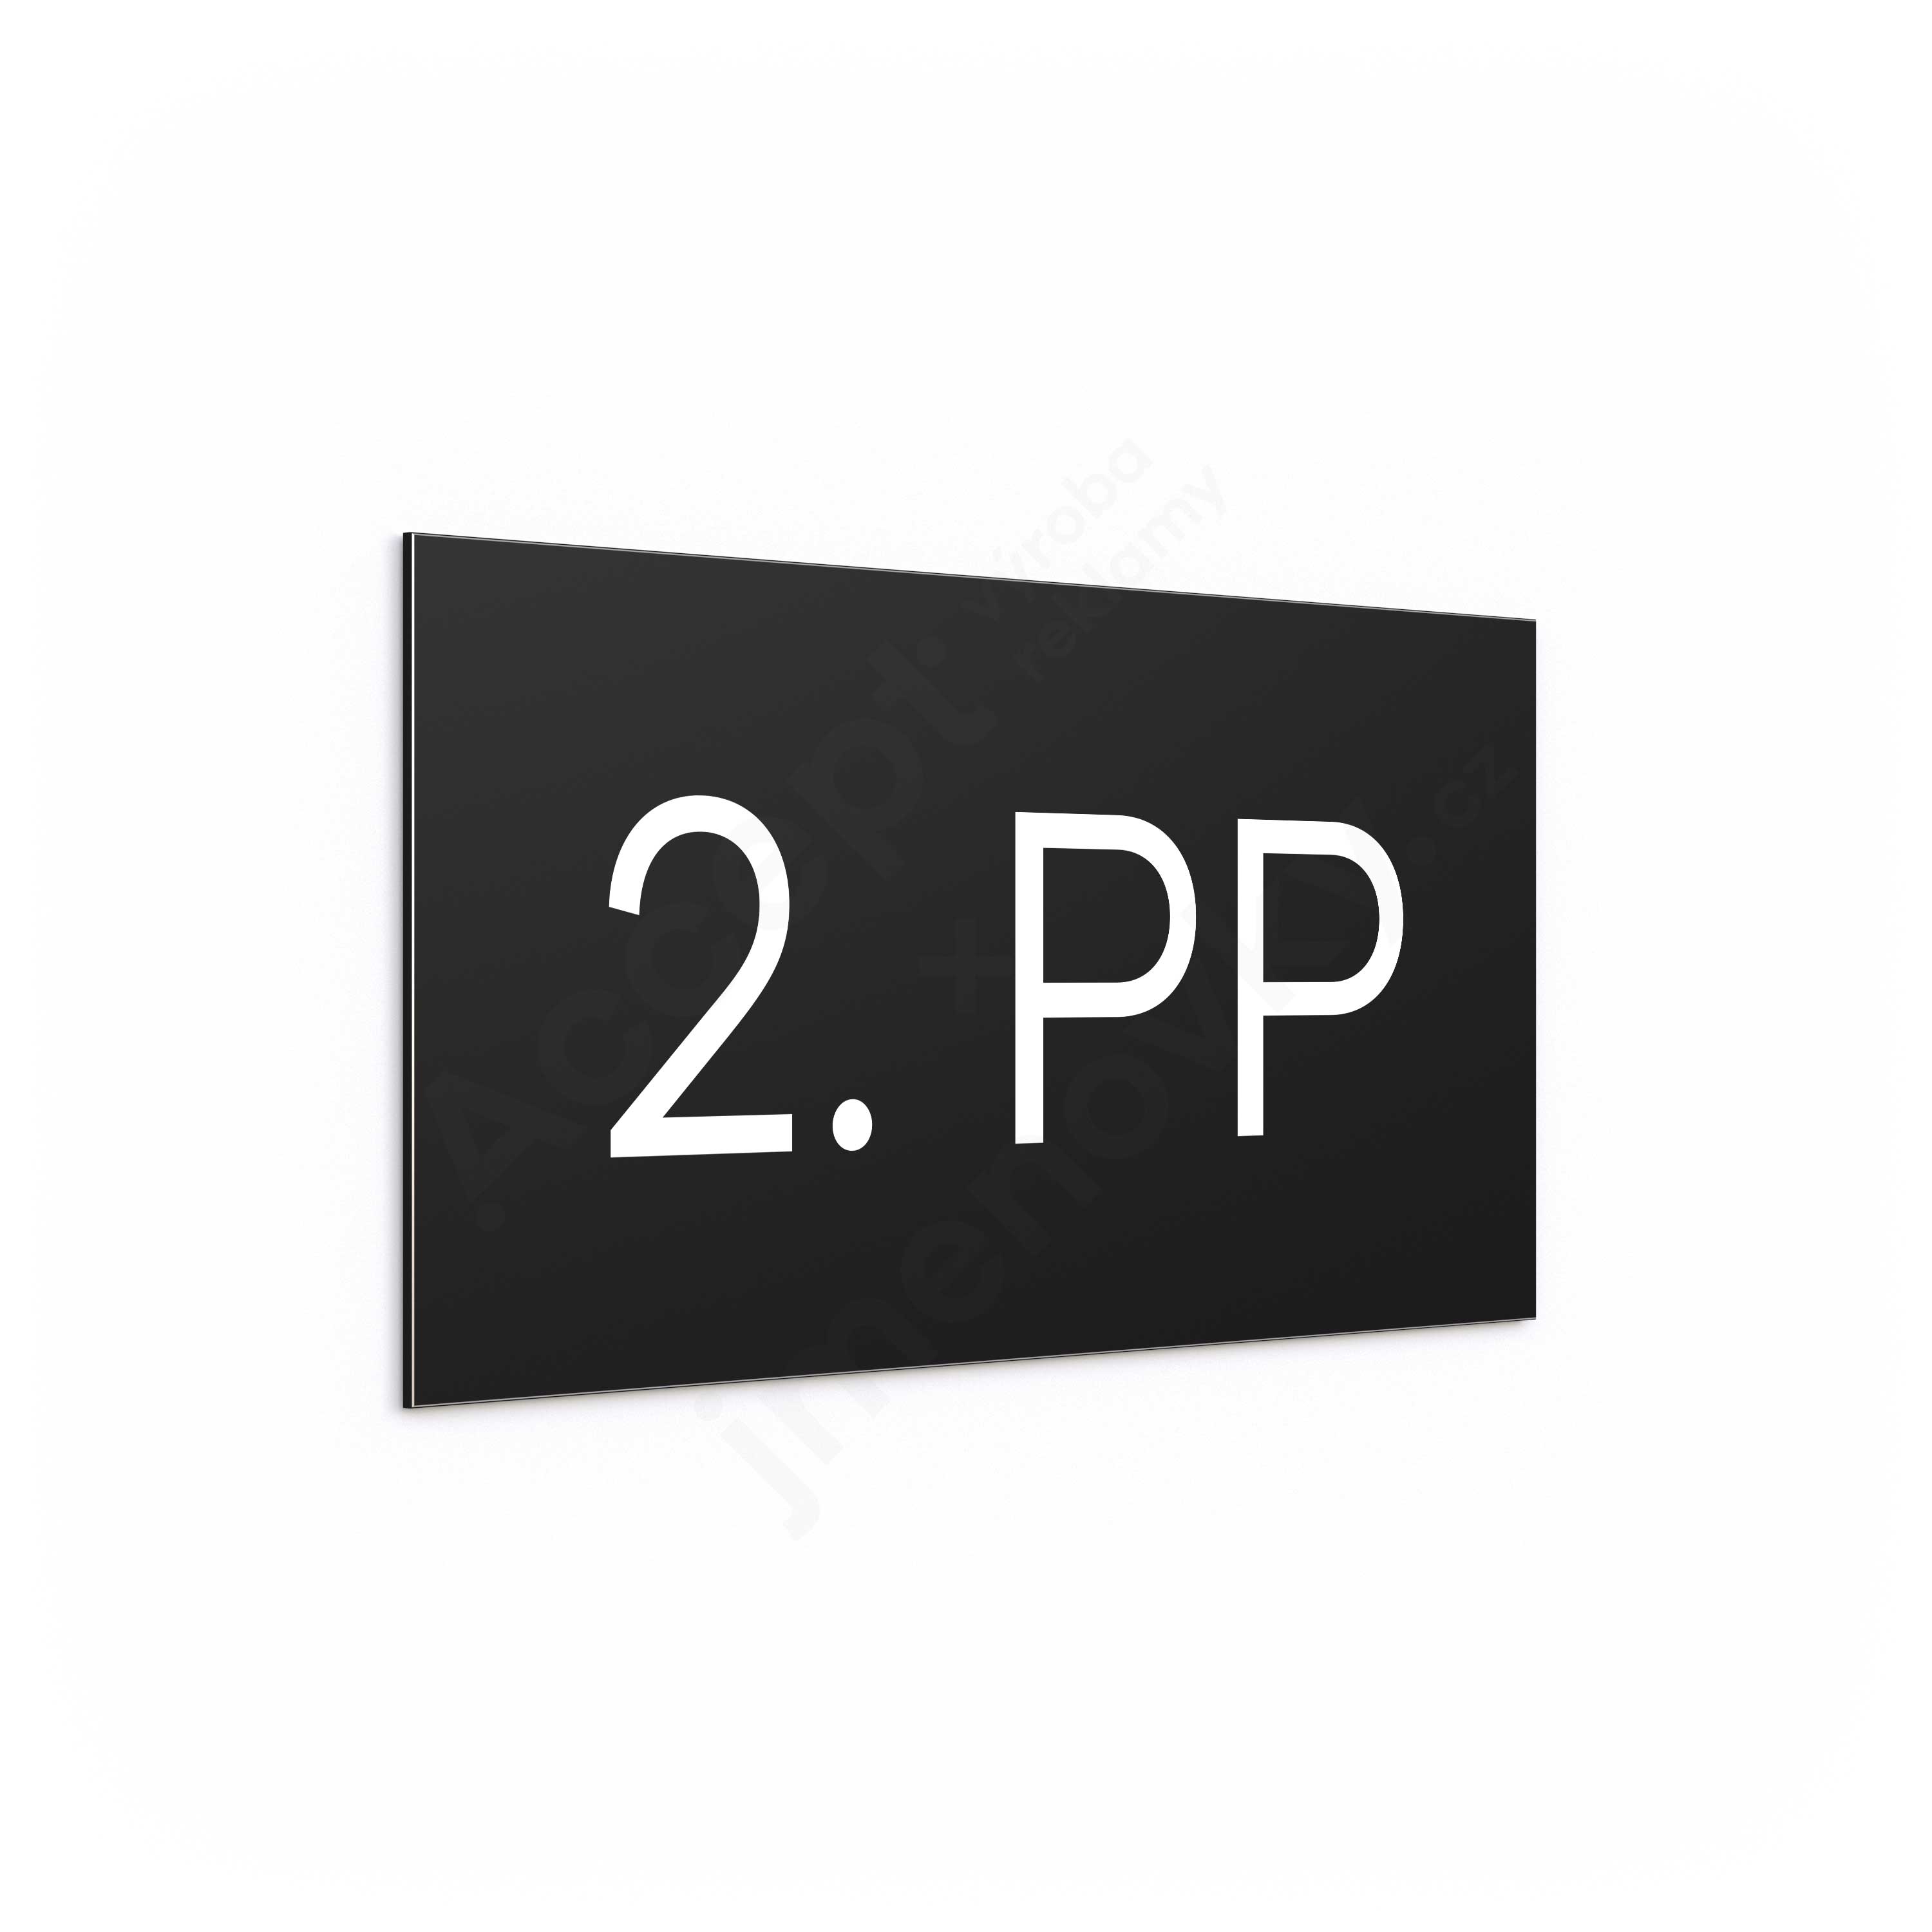 Označení podlaží "2. PP" - černá tabulka - bílý popis